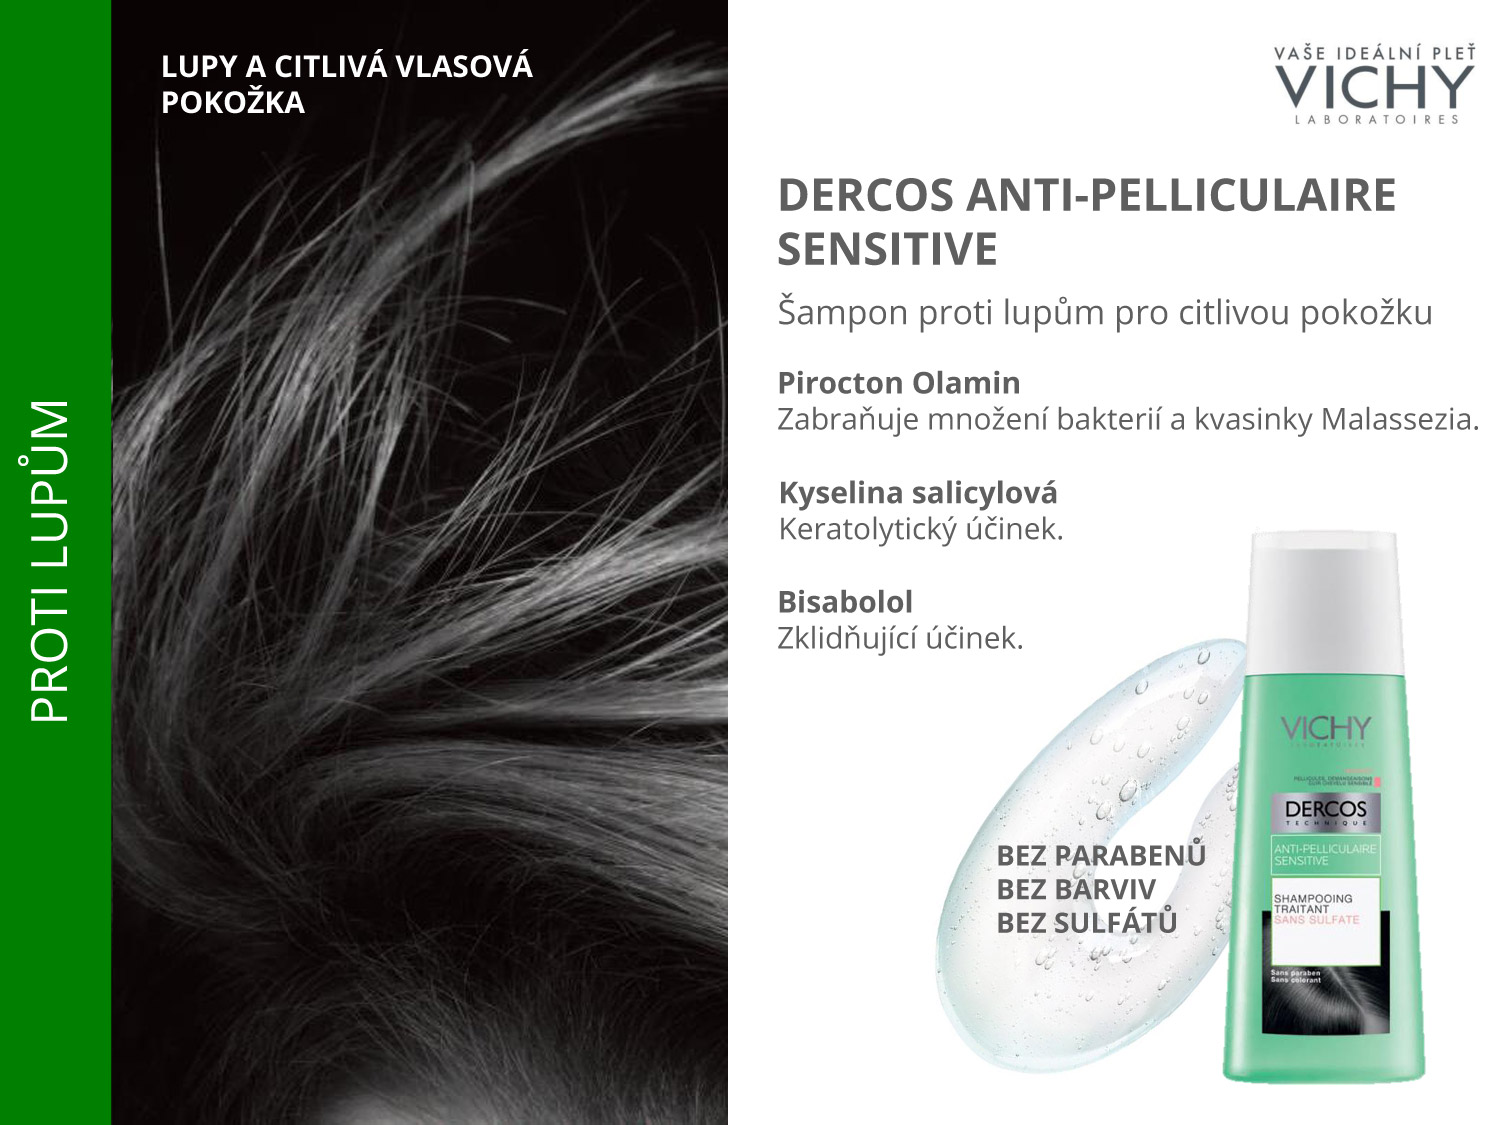 Šampony Dercos Anti-Pelliculaire Sensitive jsou určeny pro boj s lupy u citlivé vlasové pokožky.